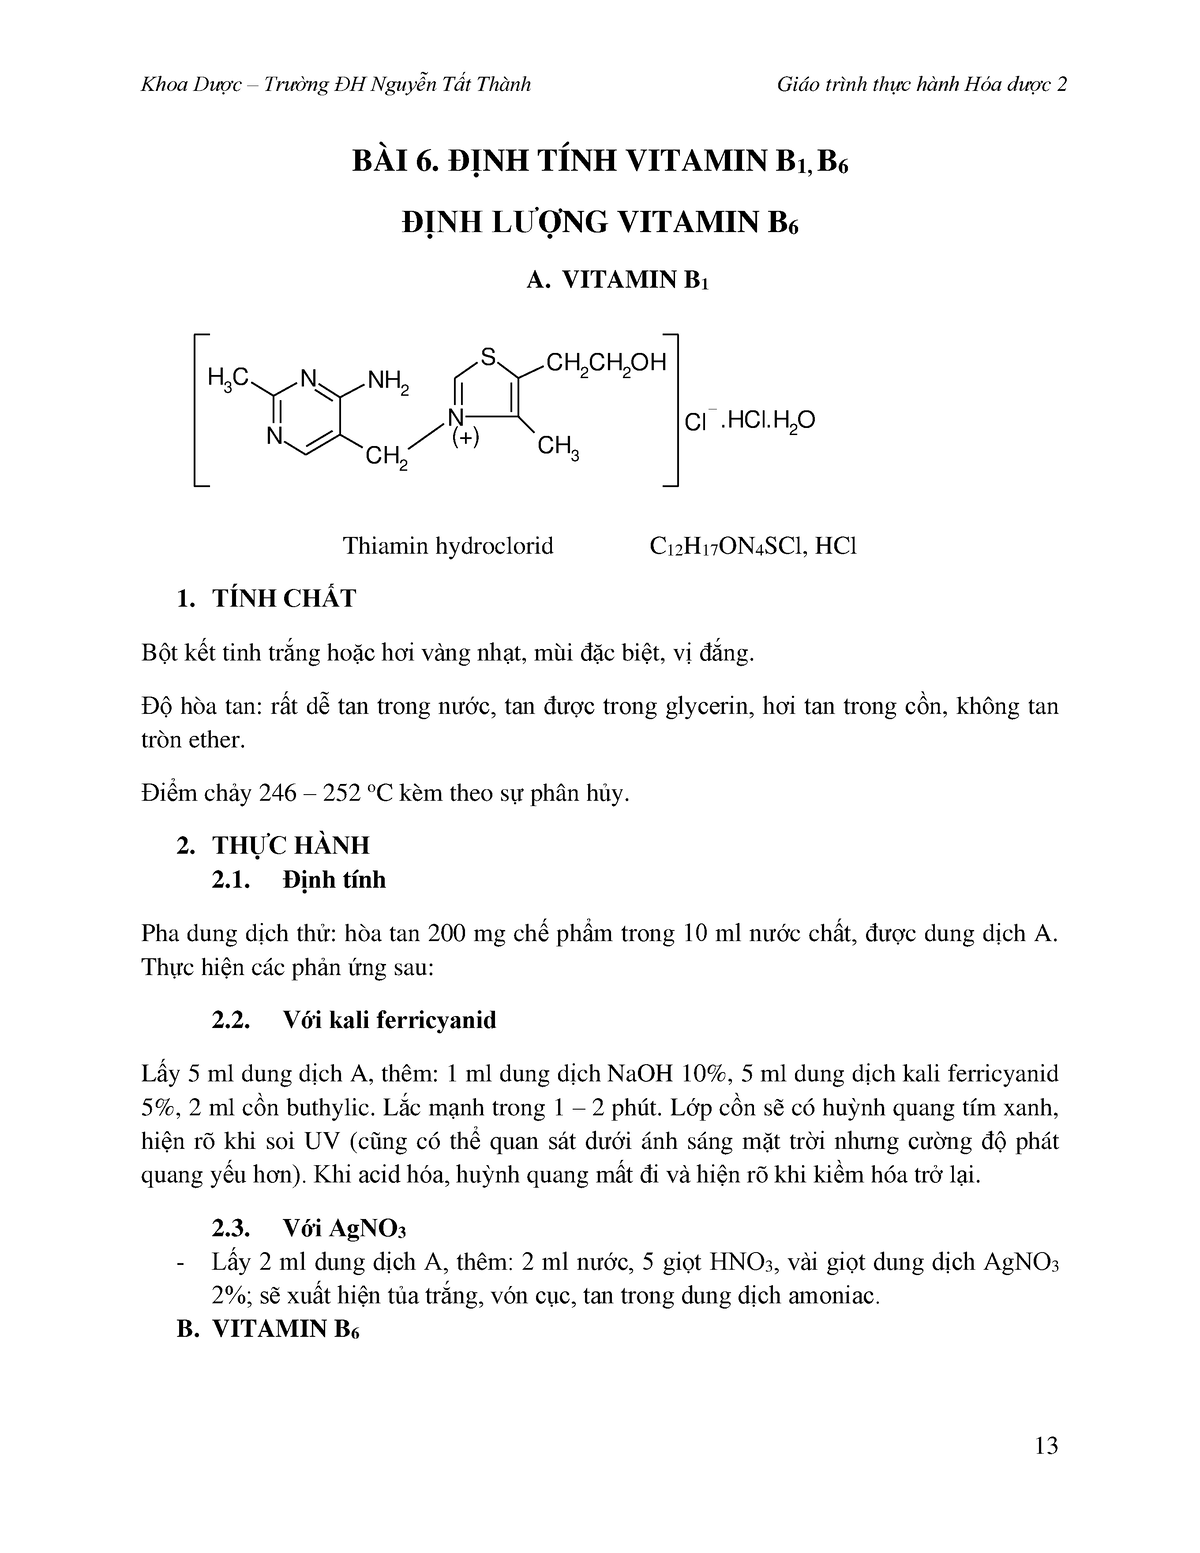 Tìm hiểu định tính vitamin b1 tại bệnh viện chất lượng